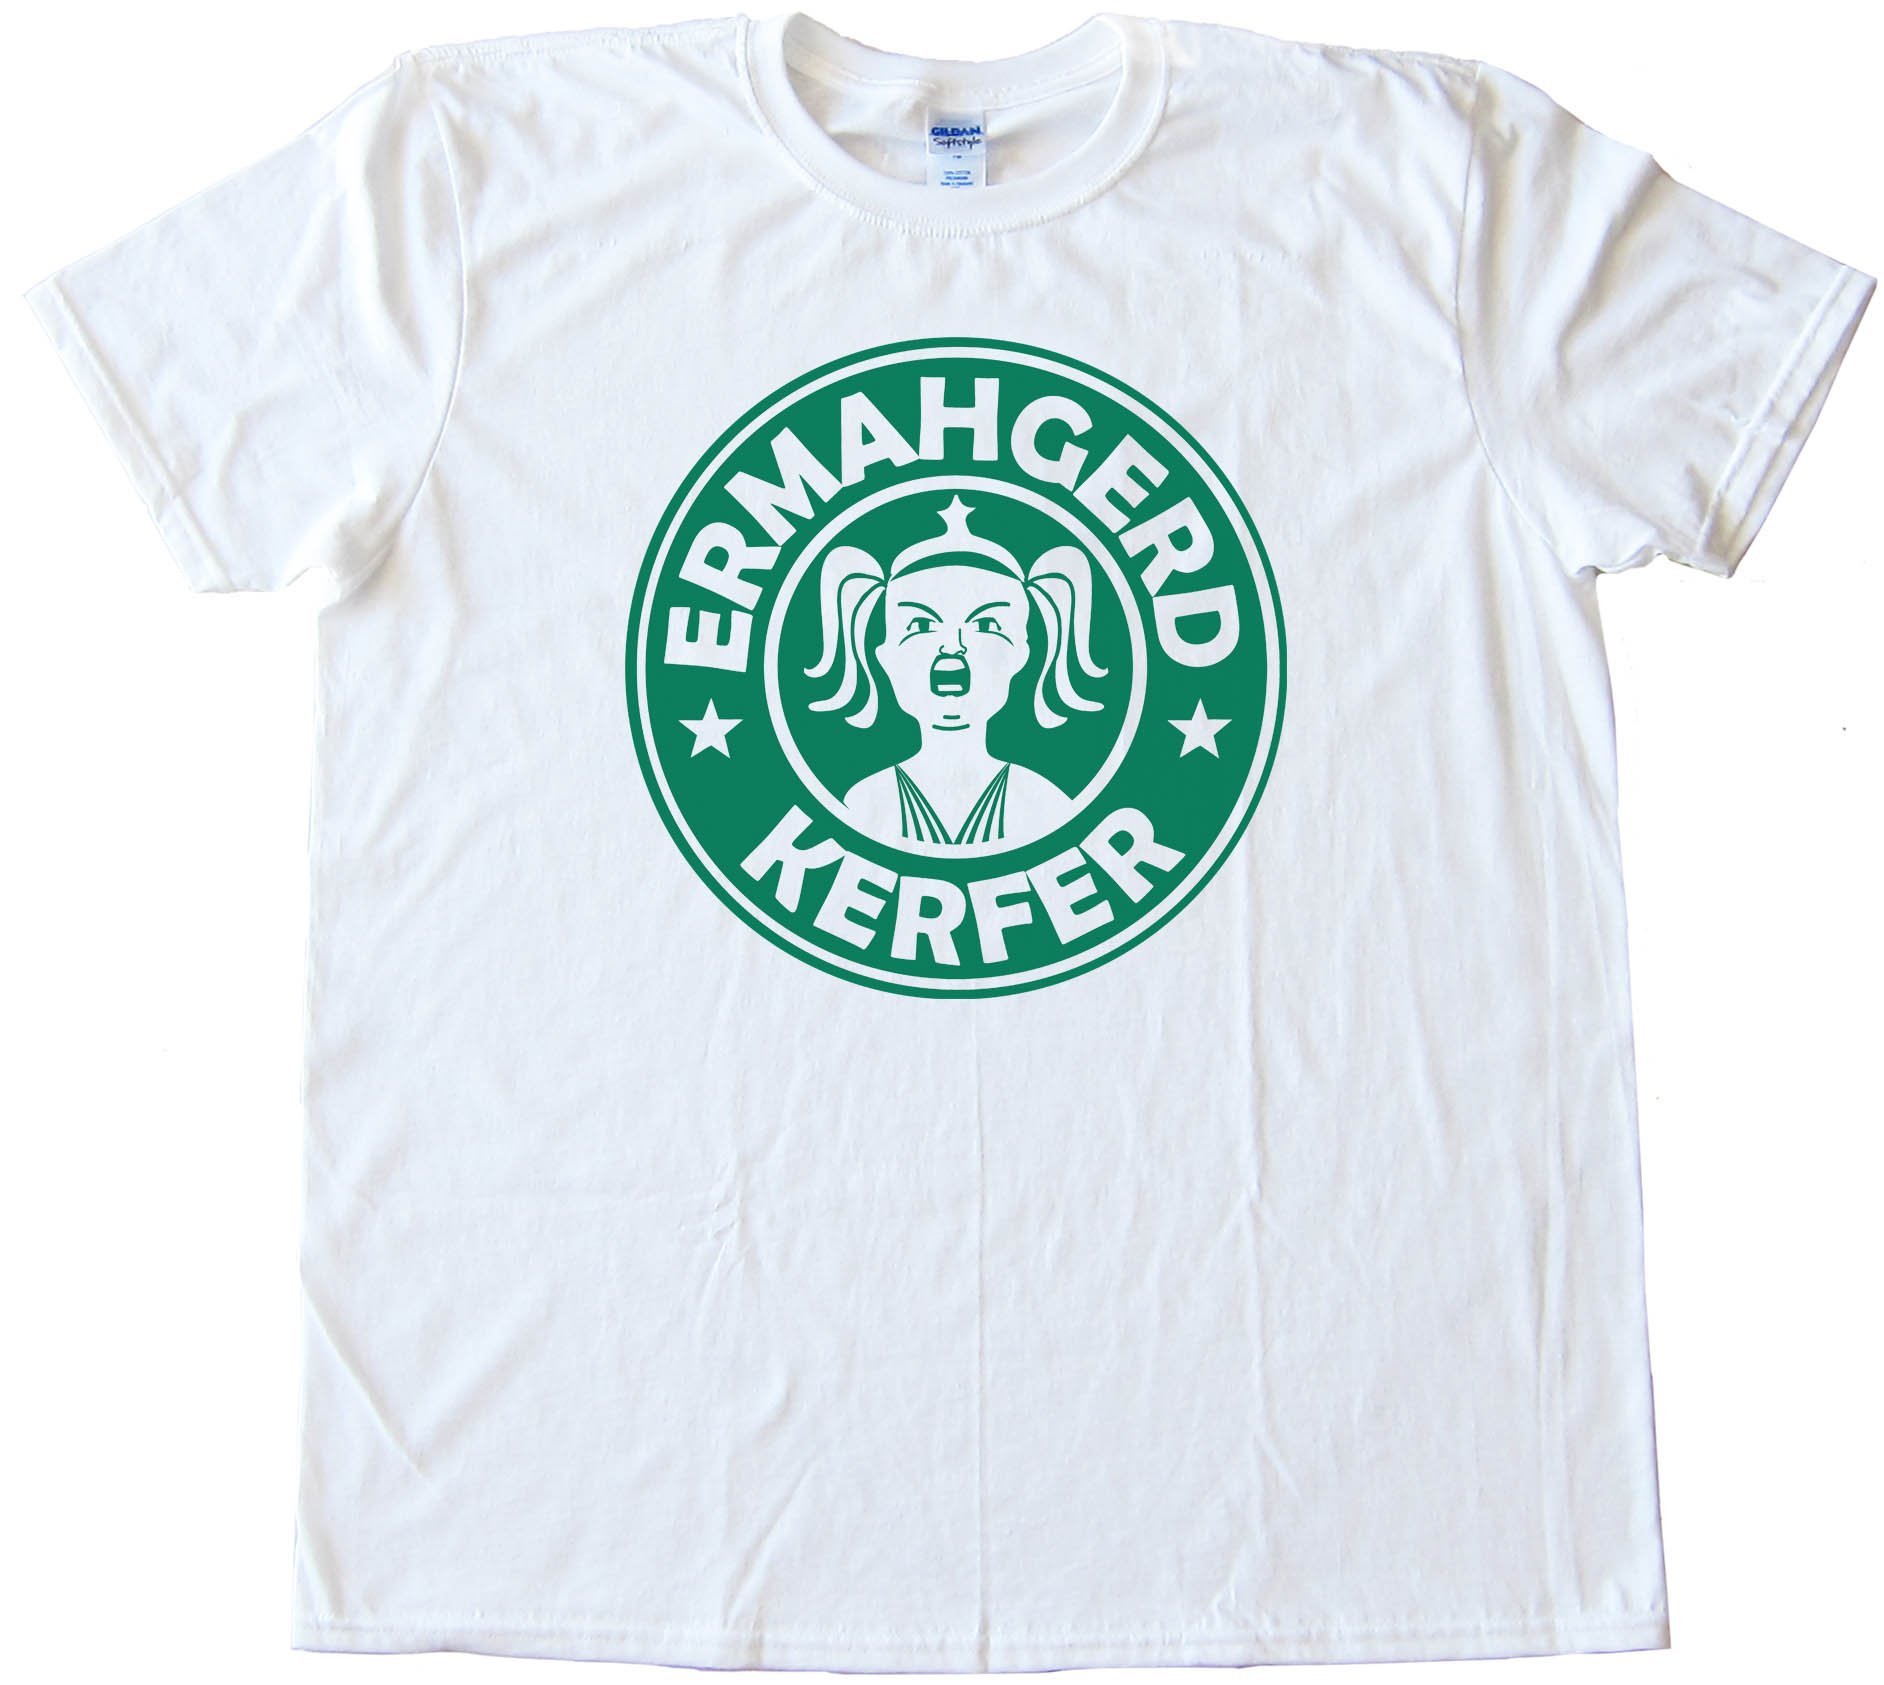 Ermahgerd Kerfer Starbucks Parody - Tee Shirt